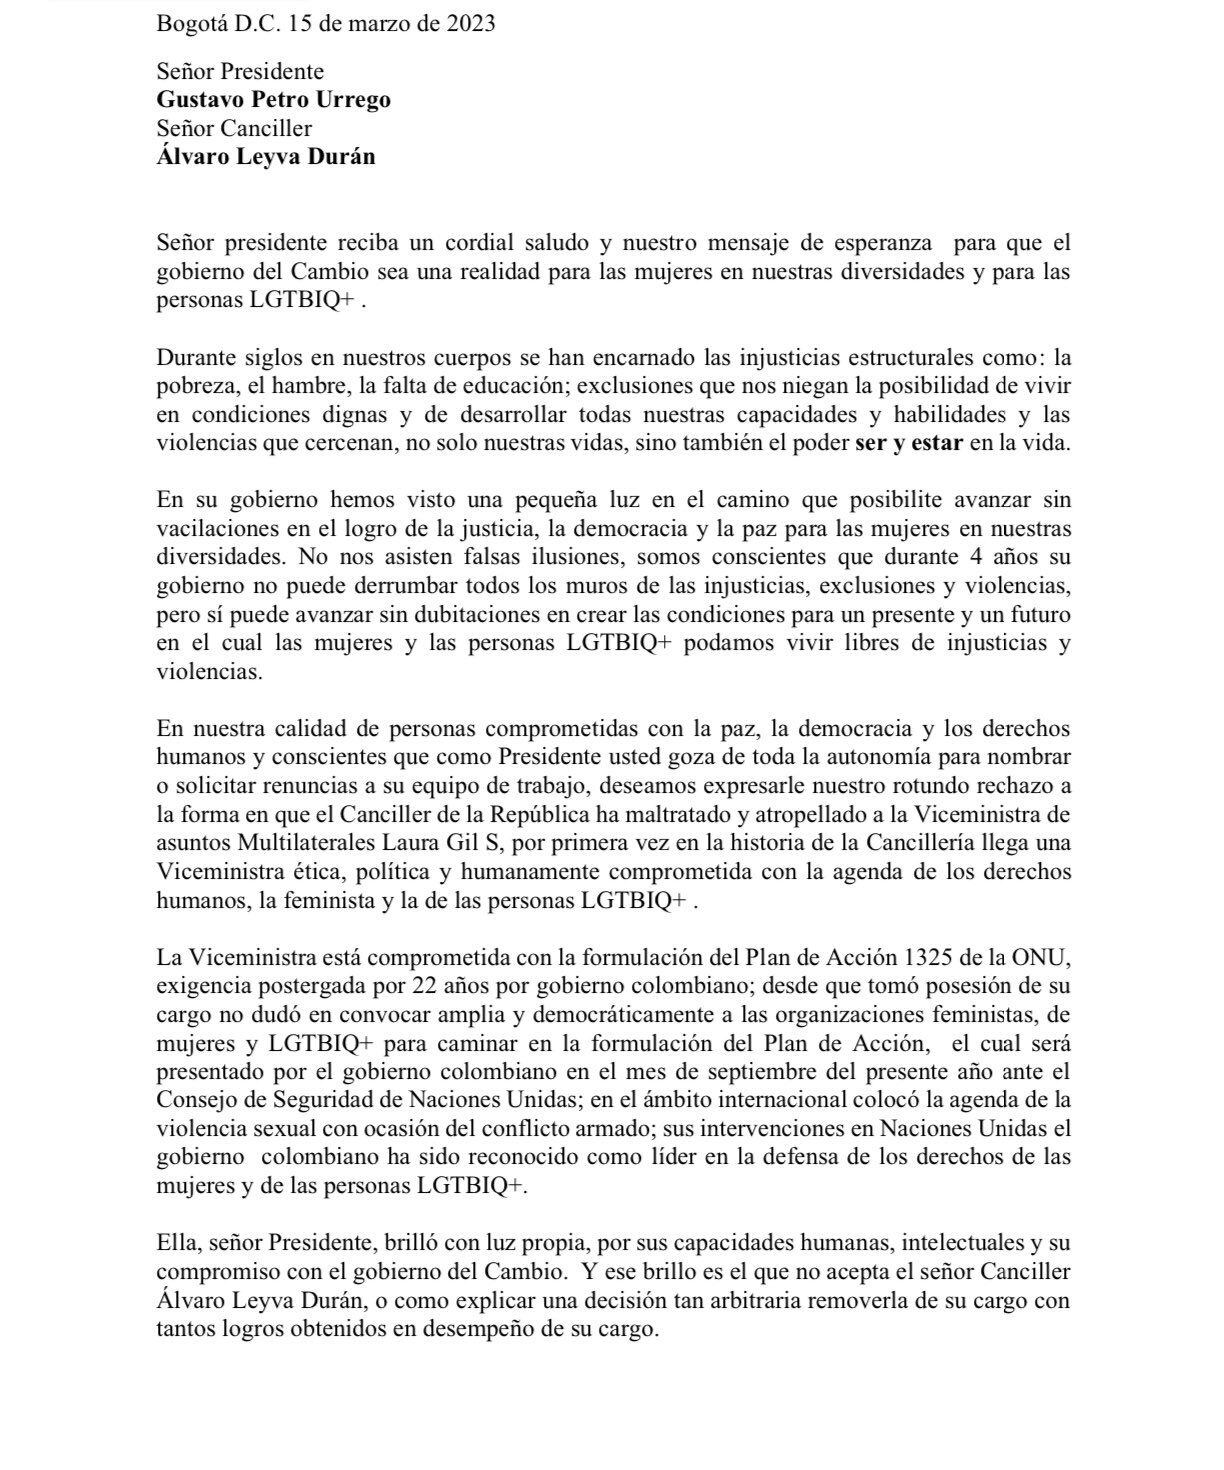 Carta contra la salida de Laura Gil de la Cancillería